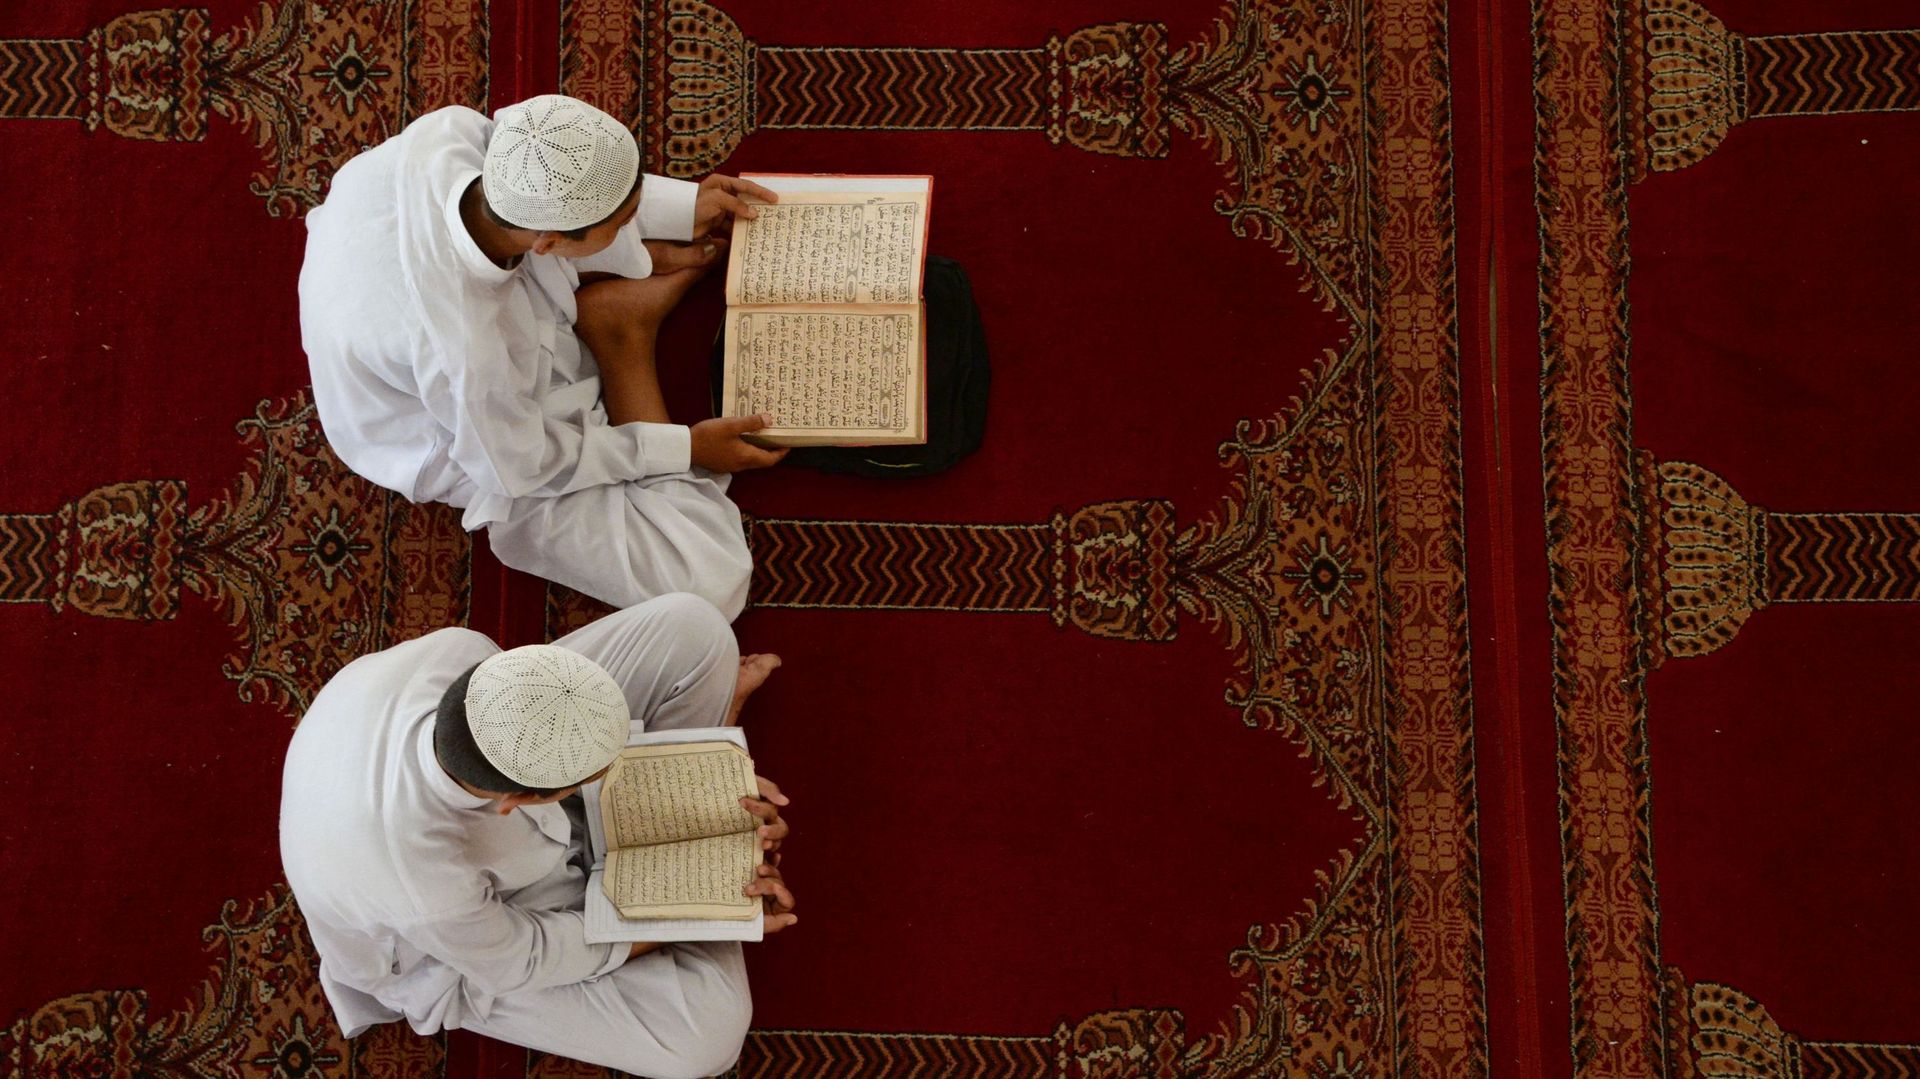 Paris: lieux de prière musulmans fermés pour prêches radicaux et apologie du terrorisme